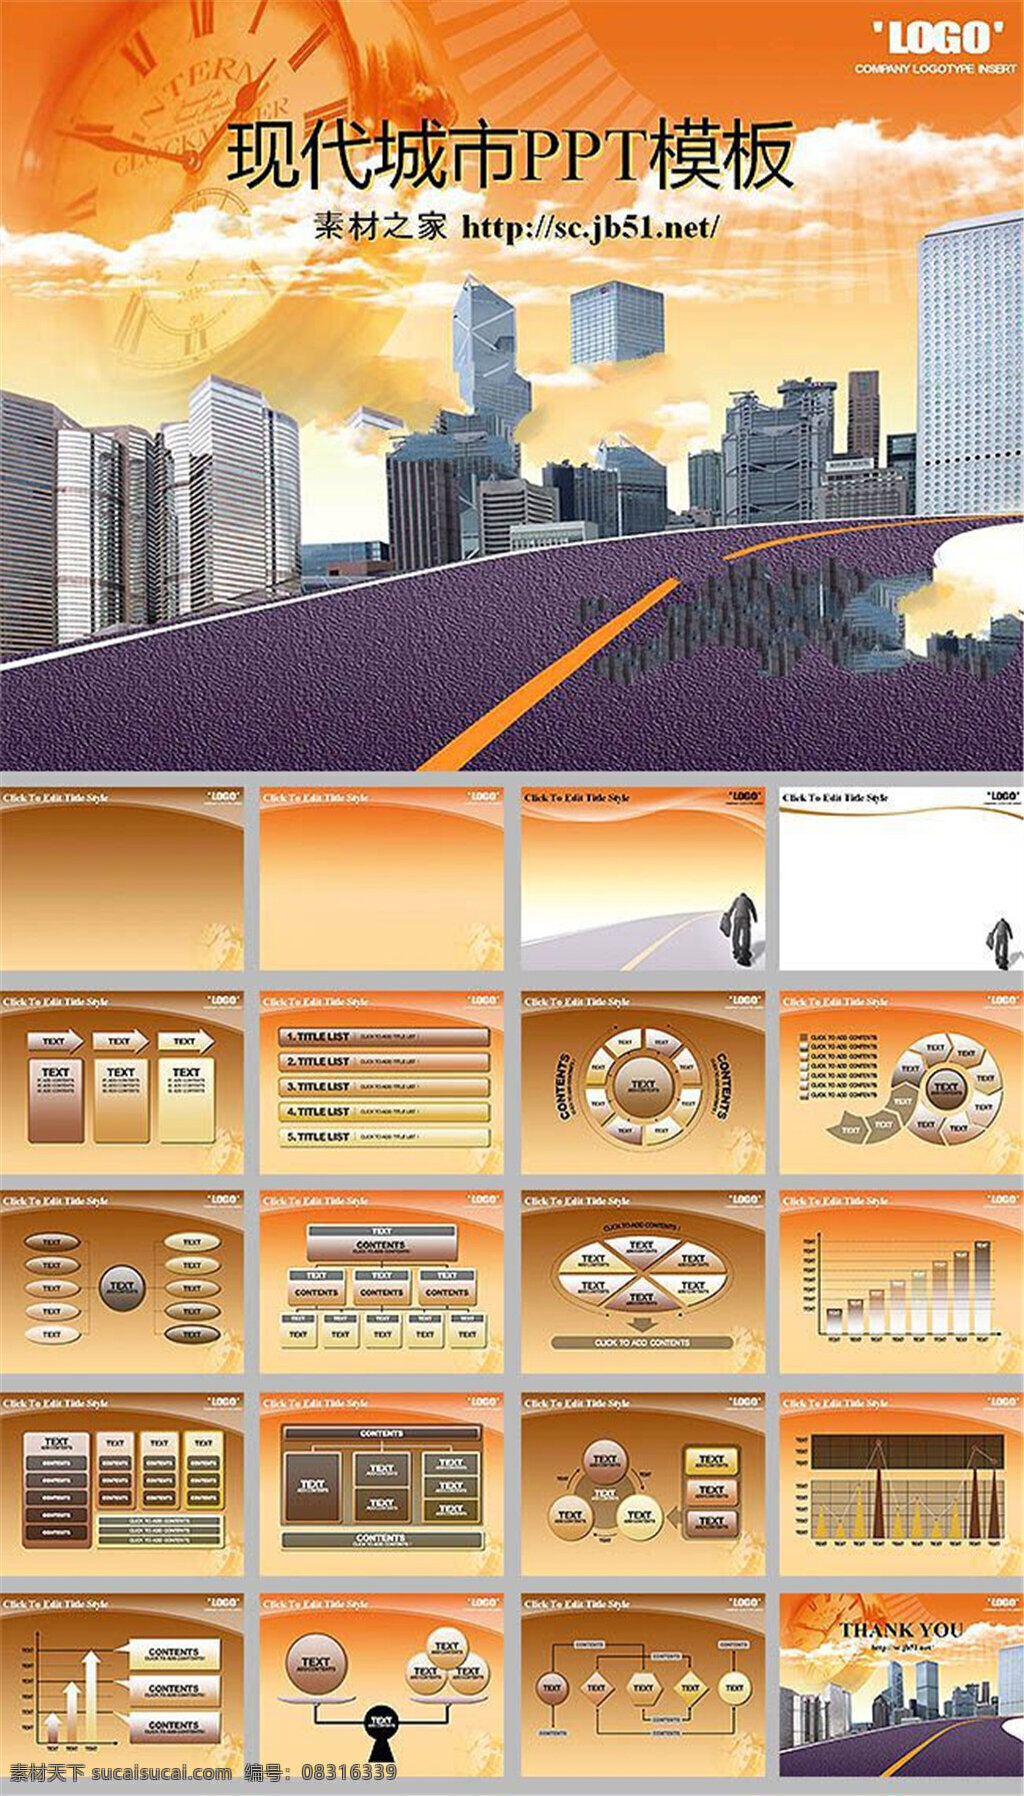 卡通 城市 建筑 动态 模板 城市建筑 ppt模板 商务ppt 橙色 背景 图 道路